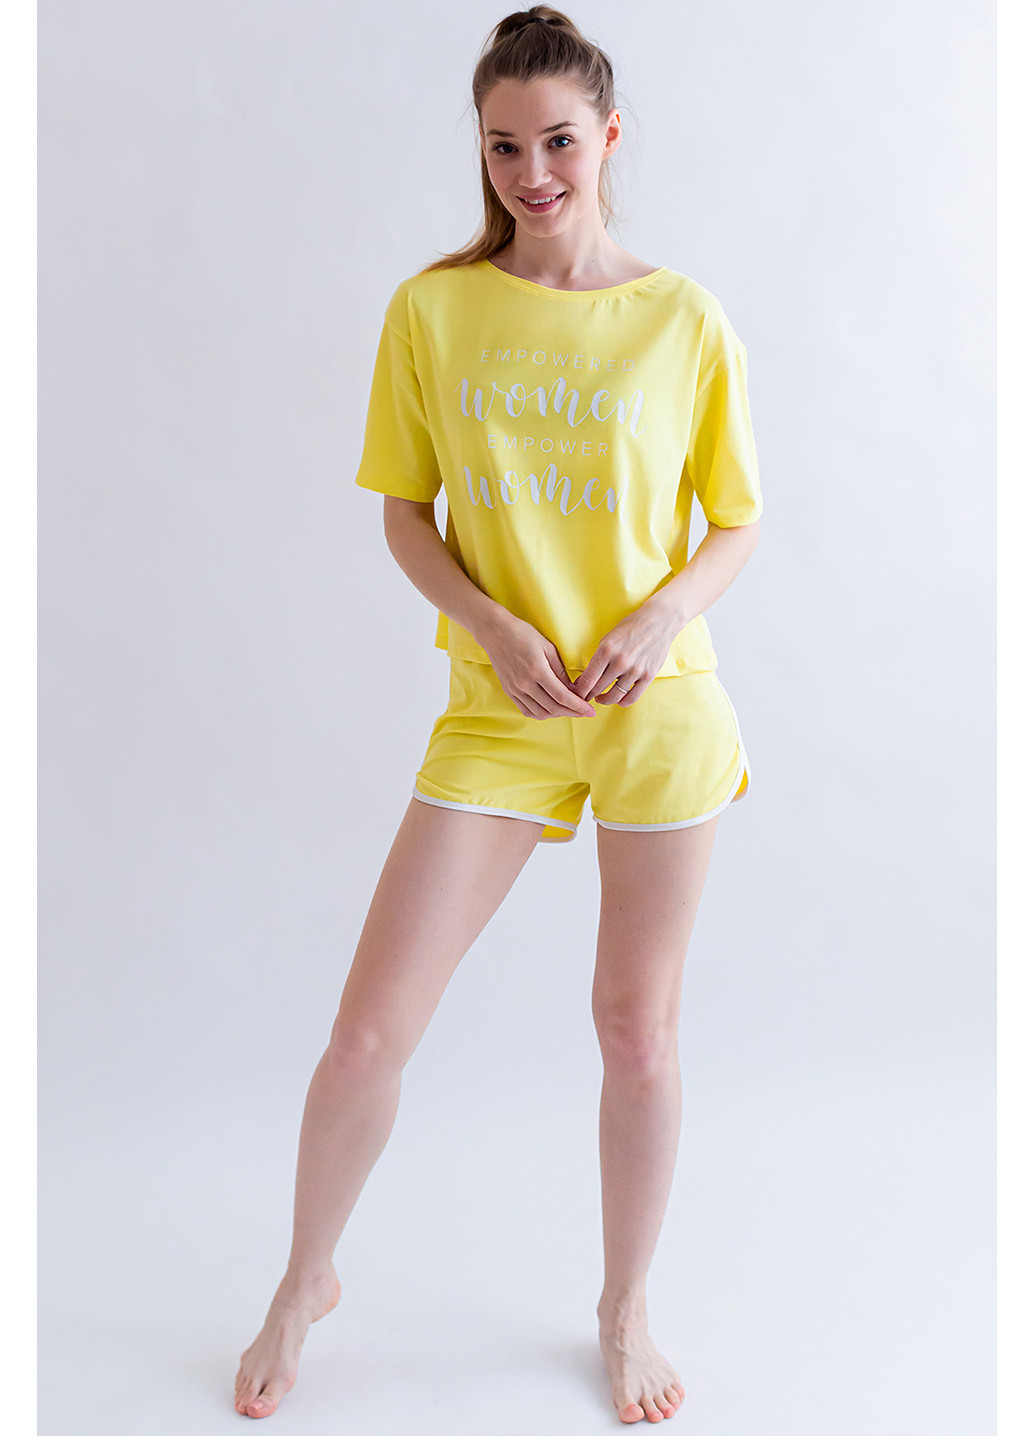 Жовта всесезон комплект жіночий (футболка та шорти) футболка + шорти Kosta 2173-8